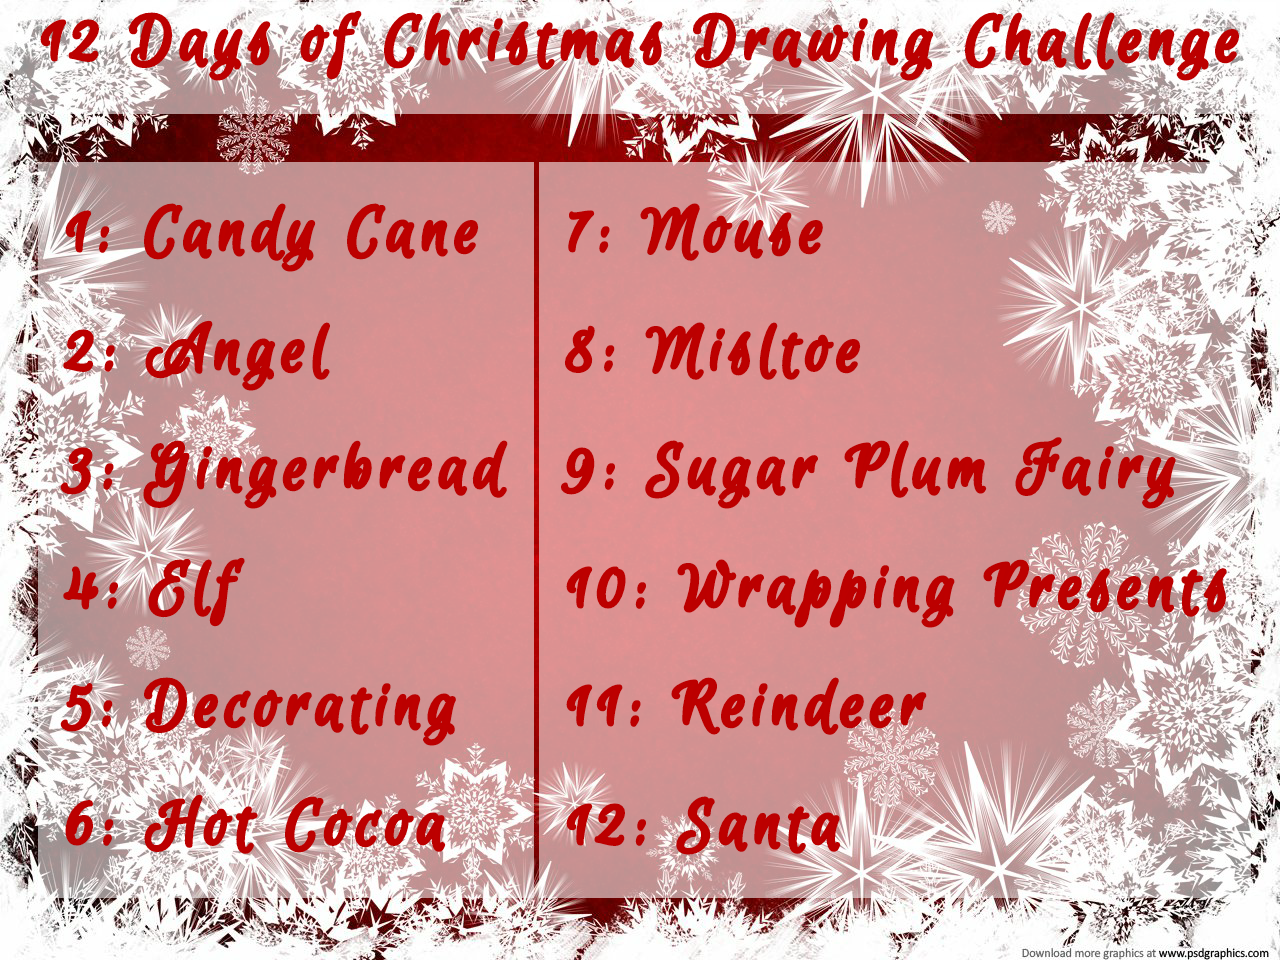 12 Days of Christmas Challenge